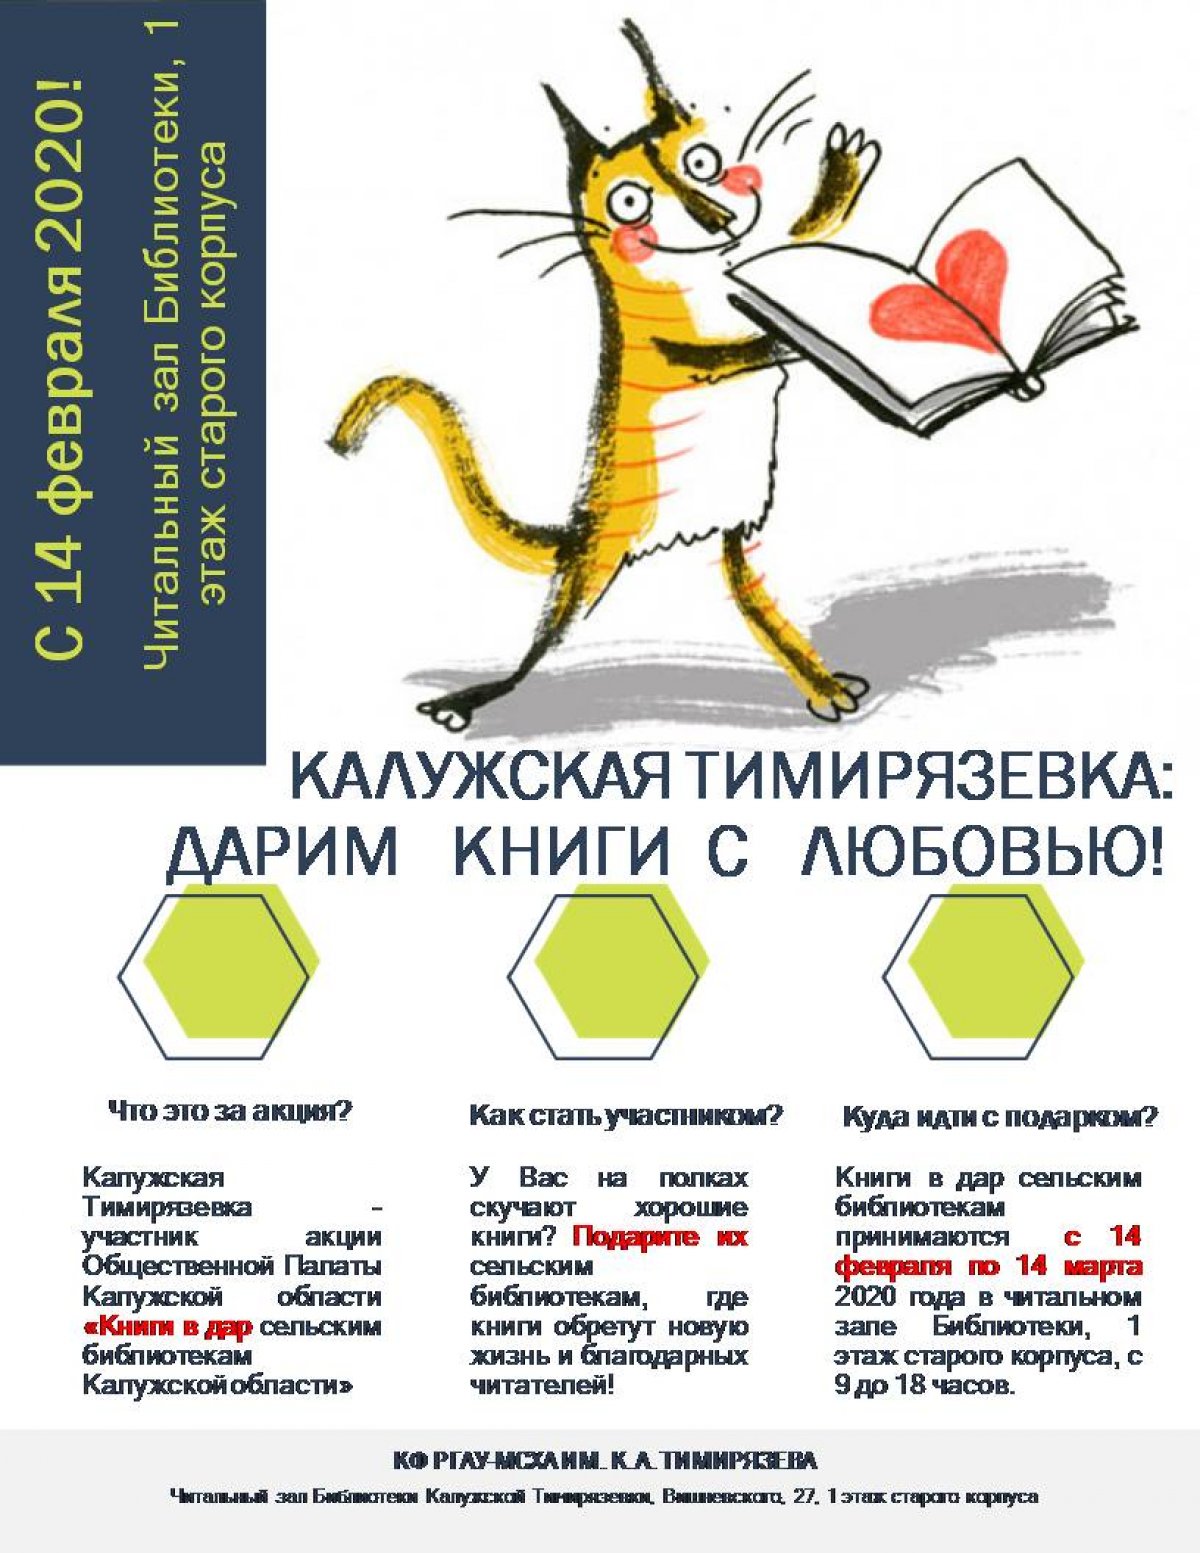 Библиотека Калужской Тимирязевки совместно с Общественной палатой Калужской области